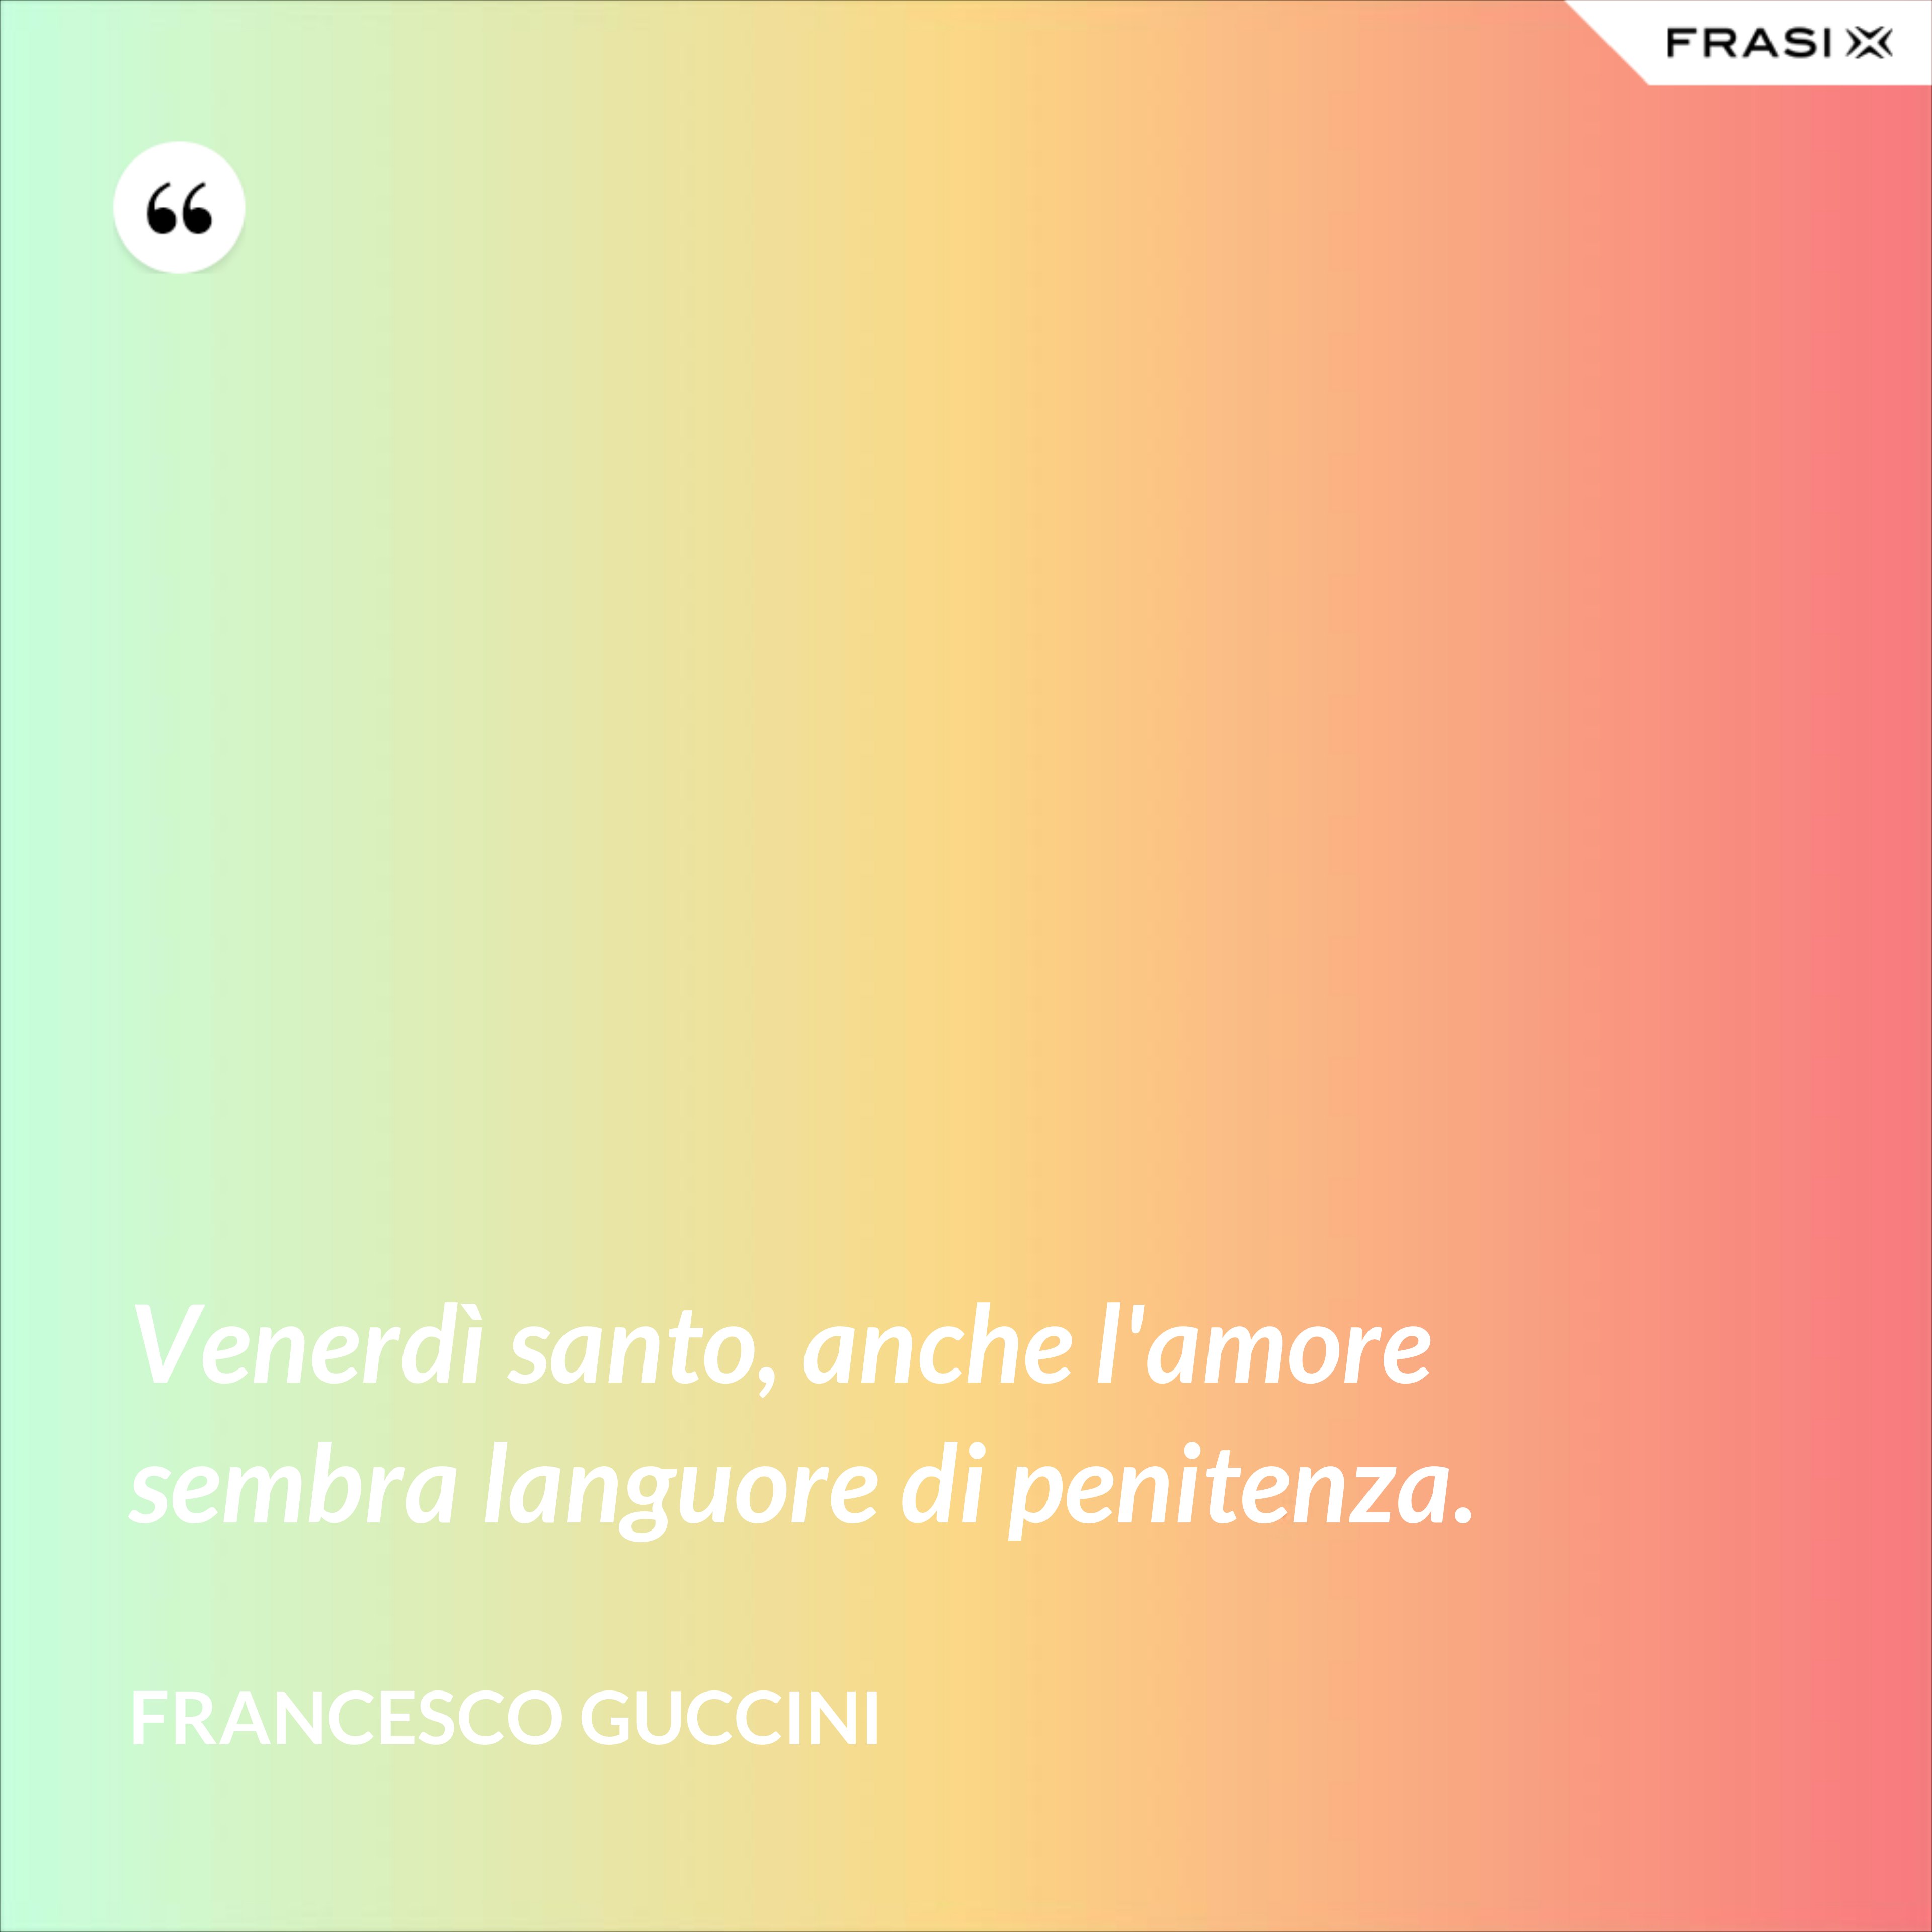 Venerdì santo, anche l'amore sembra languore di penitenza. - Francesco Guccini